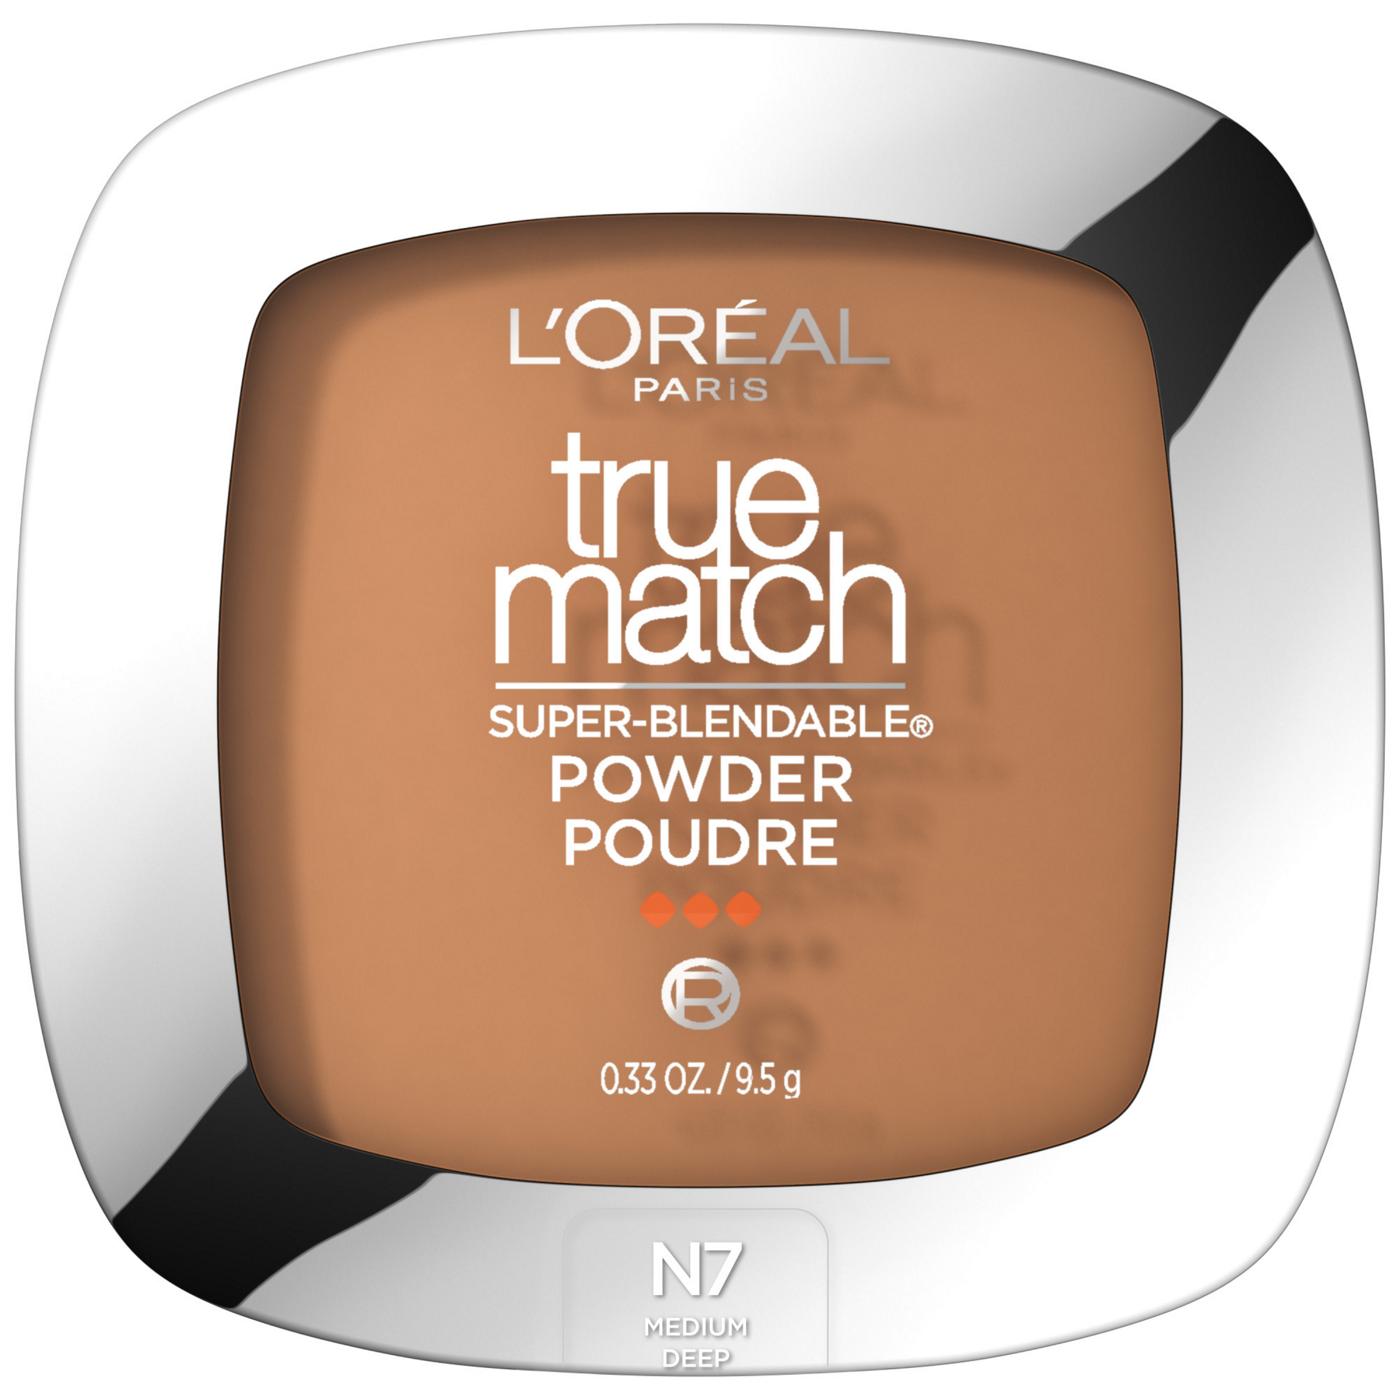 L'Oréal Paris True Match Super-Blendable Oil Free Makeup Powder Classic Tan; image 1 of 5